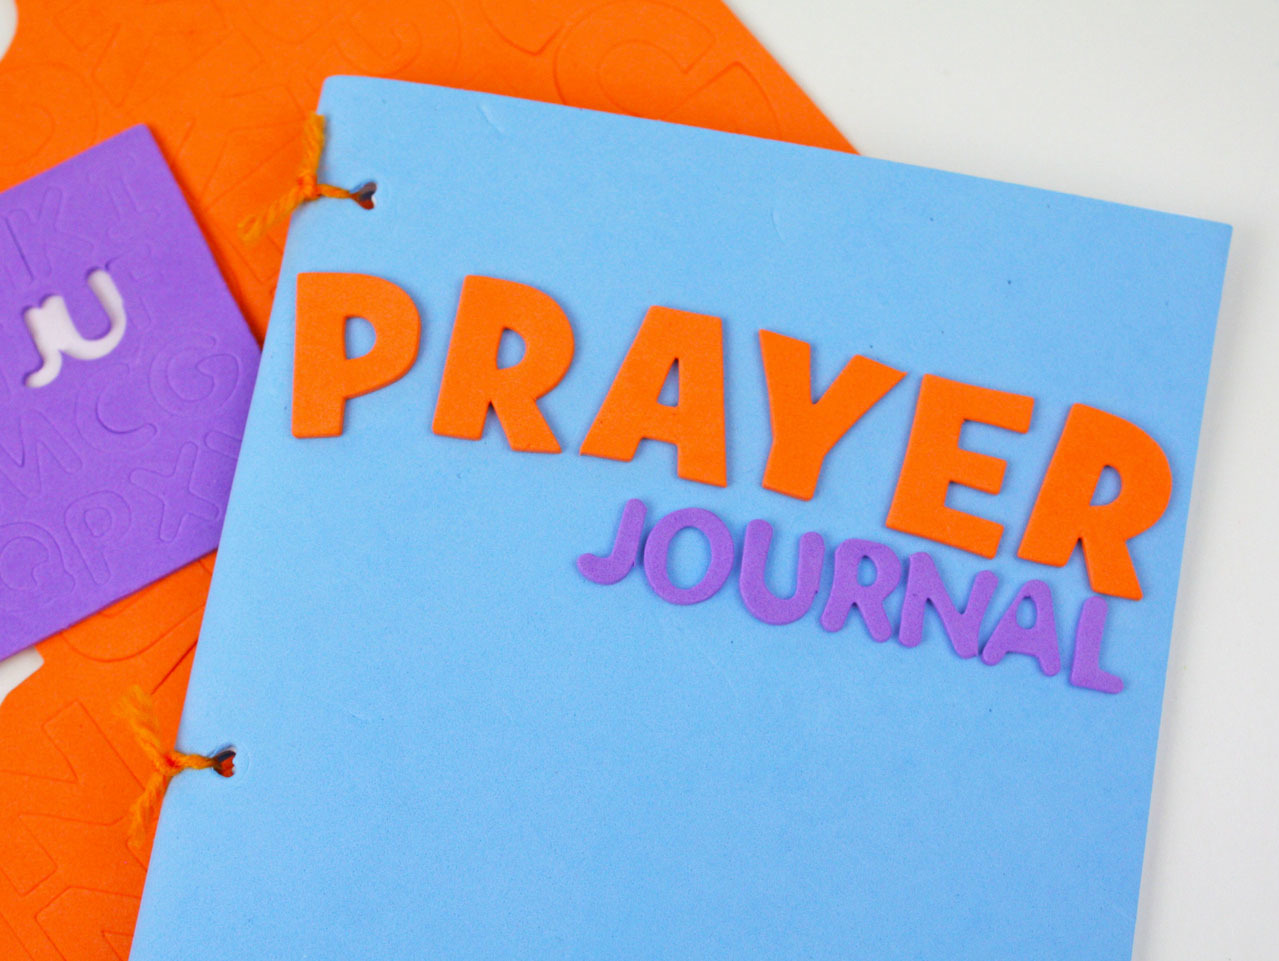 Prayer Journals for Kids (Made Easy)